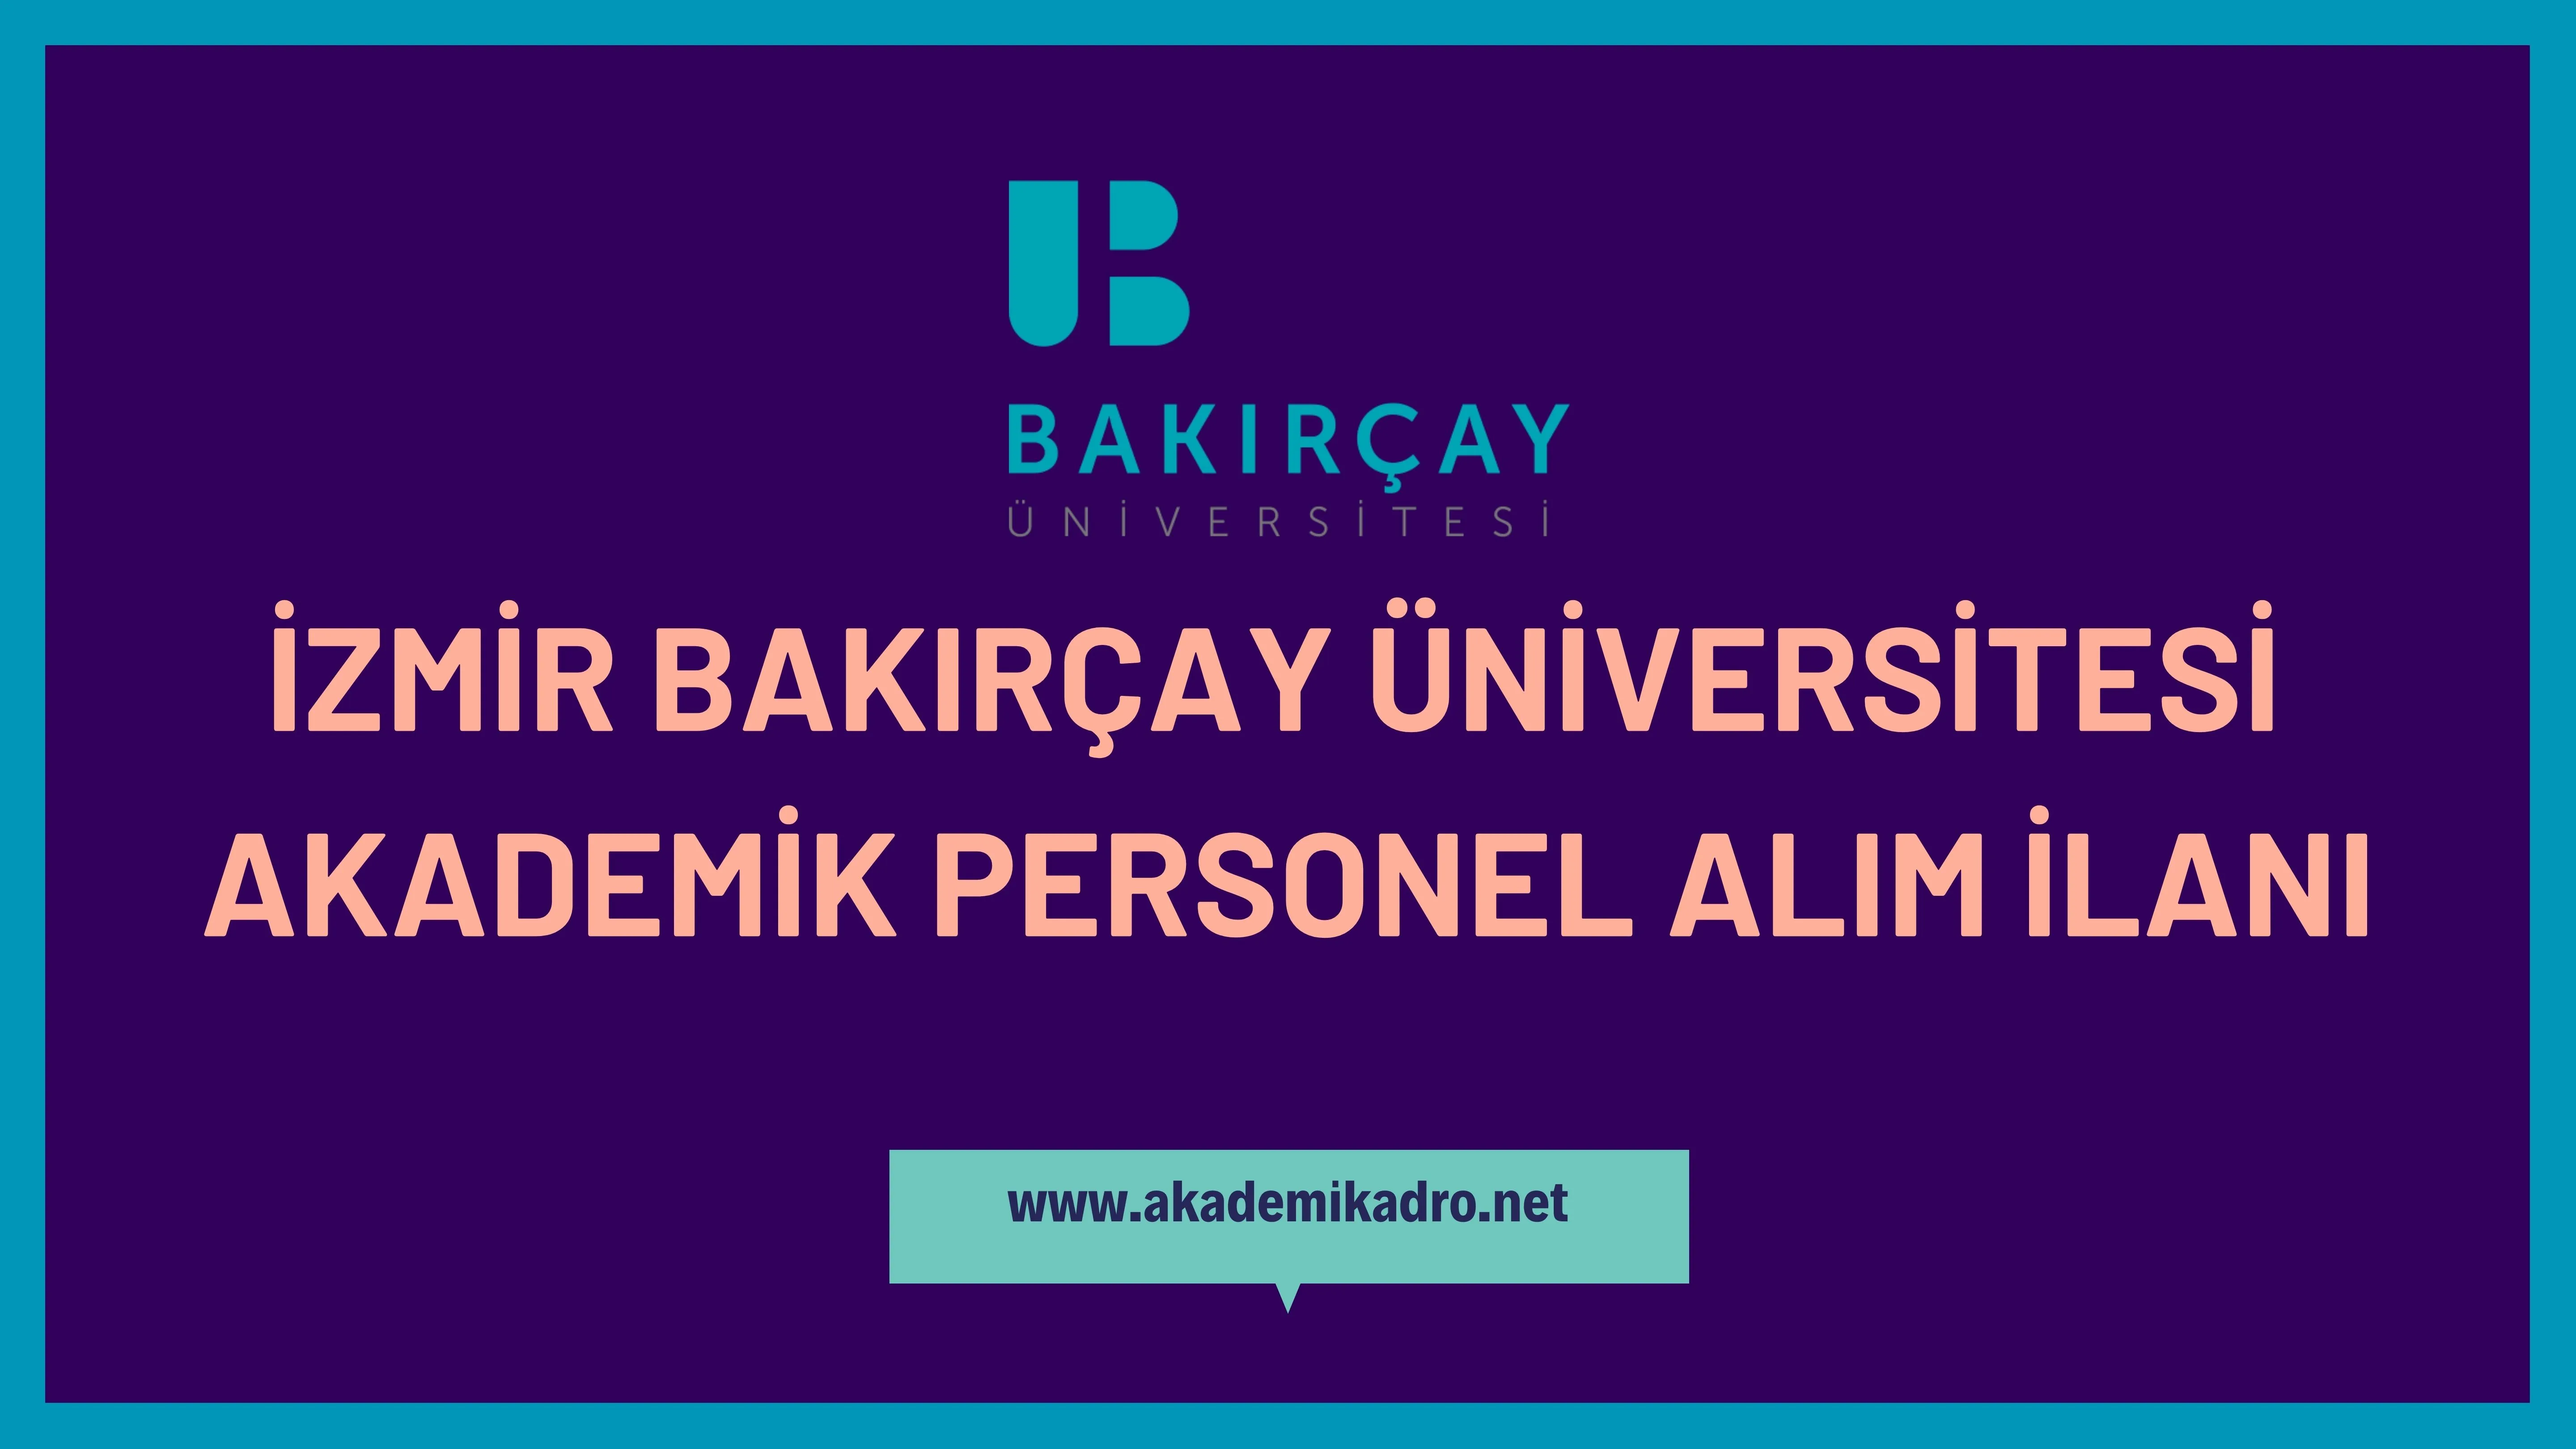 İzmir Bakırçay Üniversitesi çeşitli branşlarda 12 akademik personel alacak.